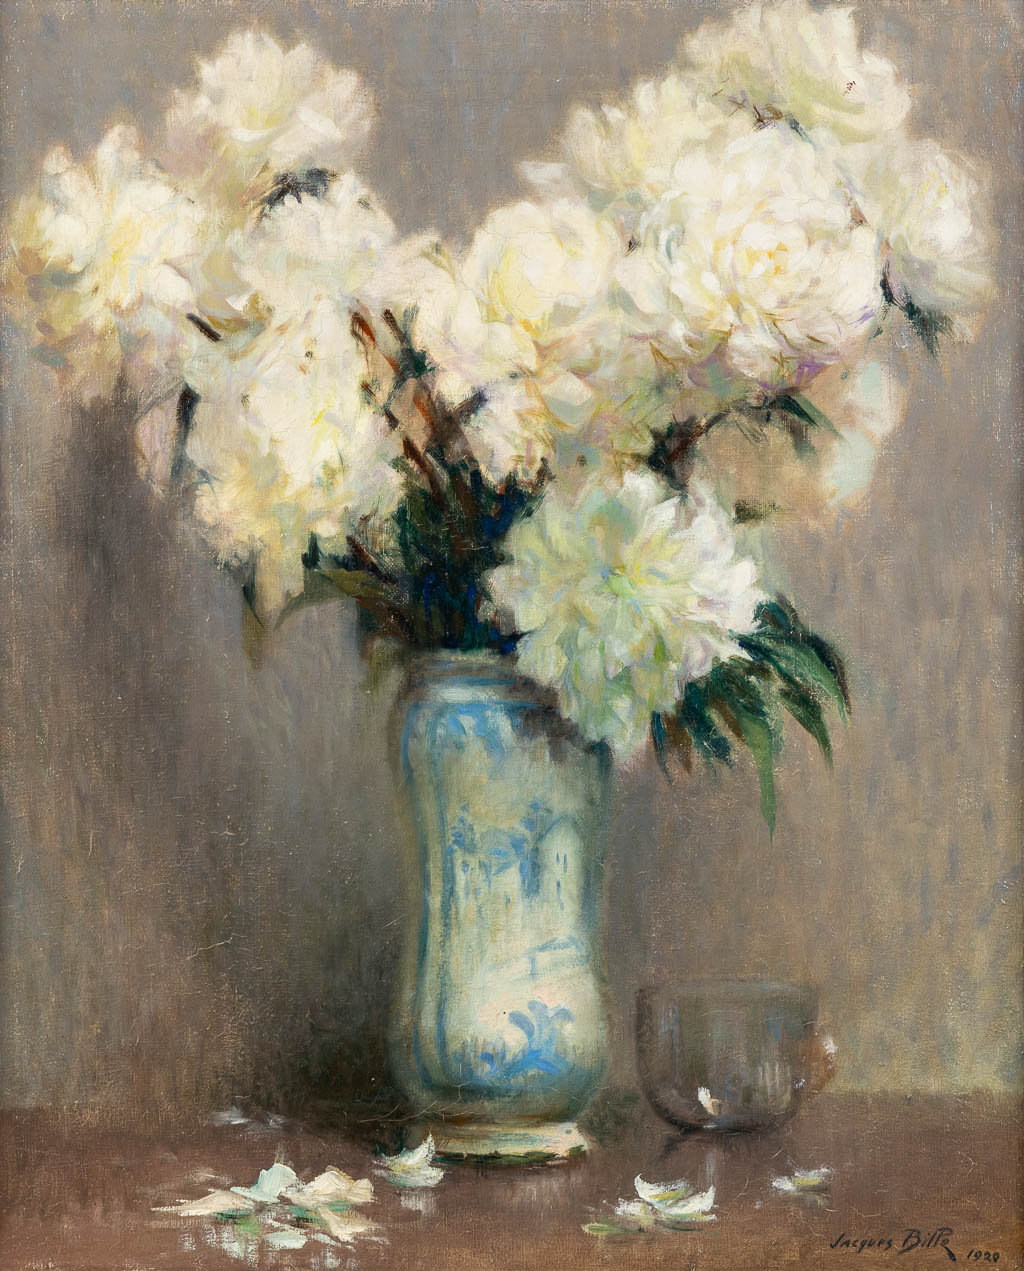 Jacques BILLE (1880-c.1943) 'Flowers' 1920. (W:50 x H:61 cm)